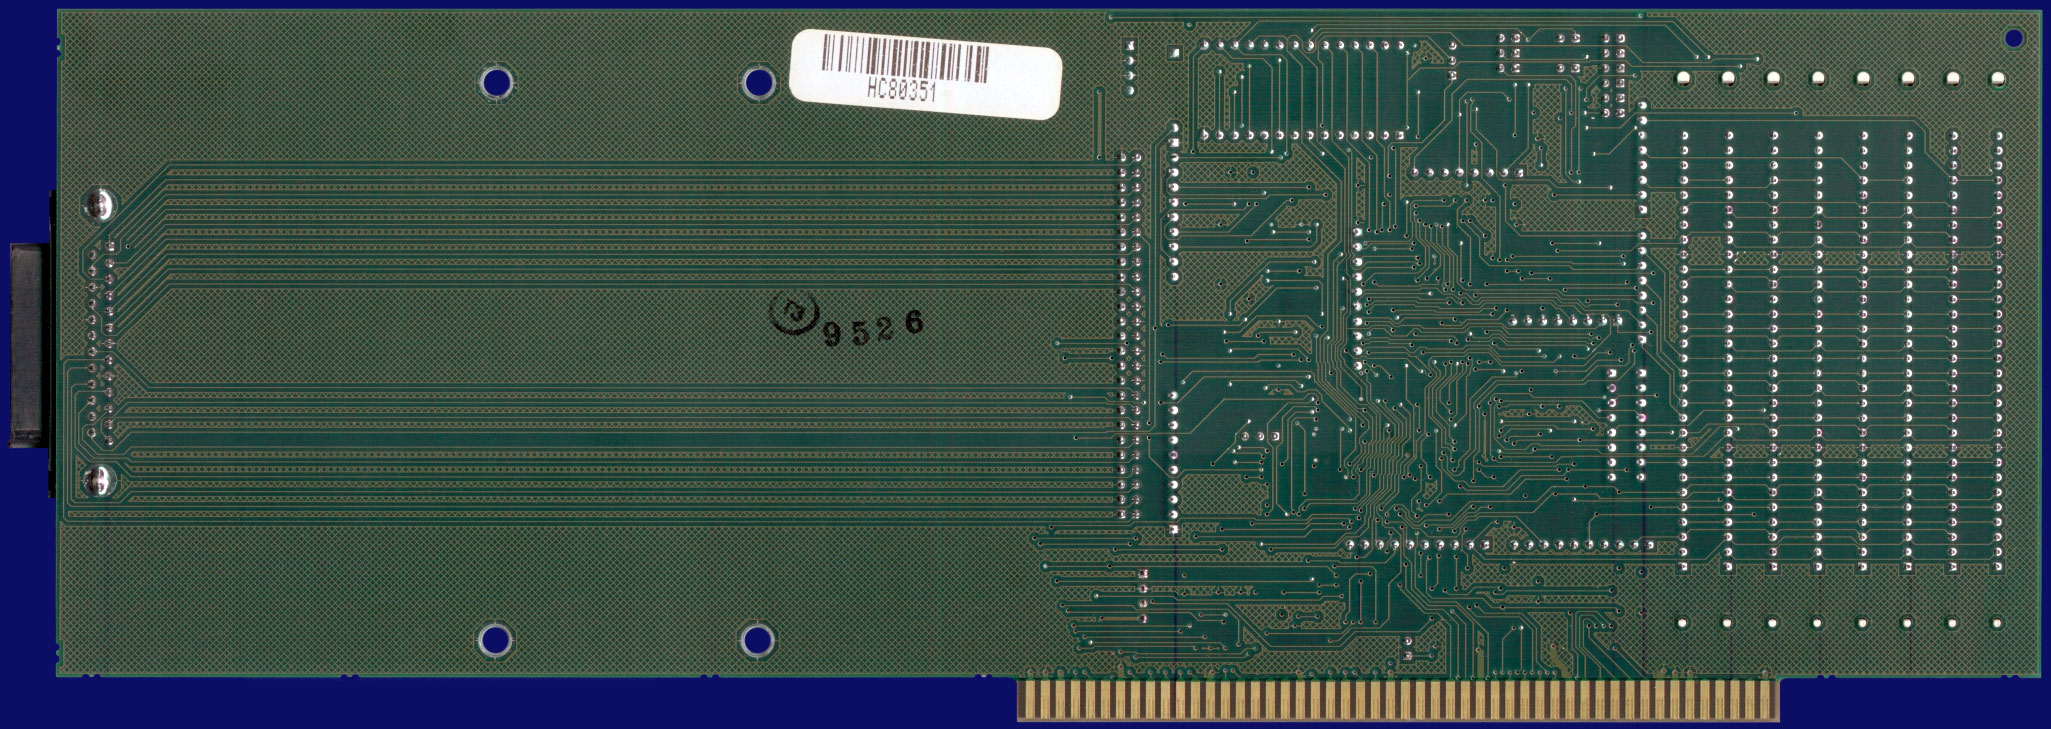 Great Valley Products Impact A2000-HC+8 Series II - Rev. II mit RAM und Guru-ROM, Rückseite